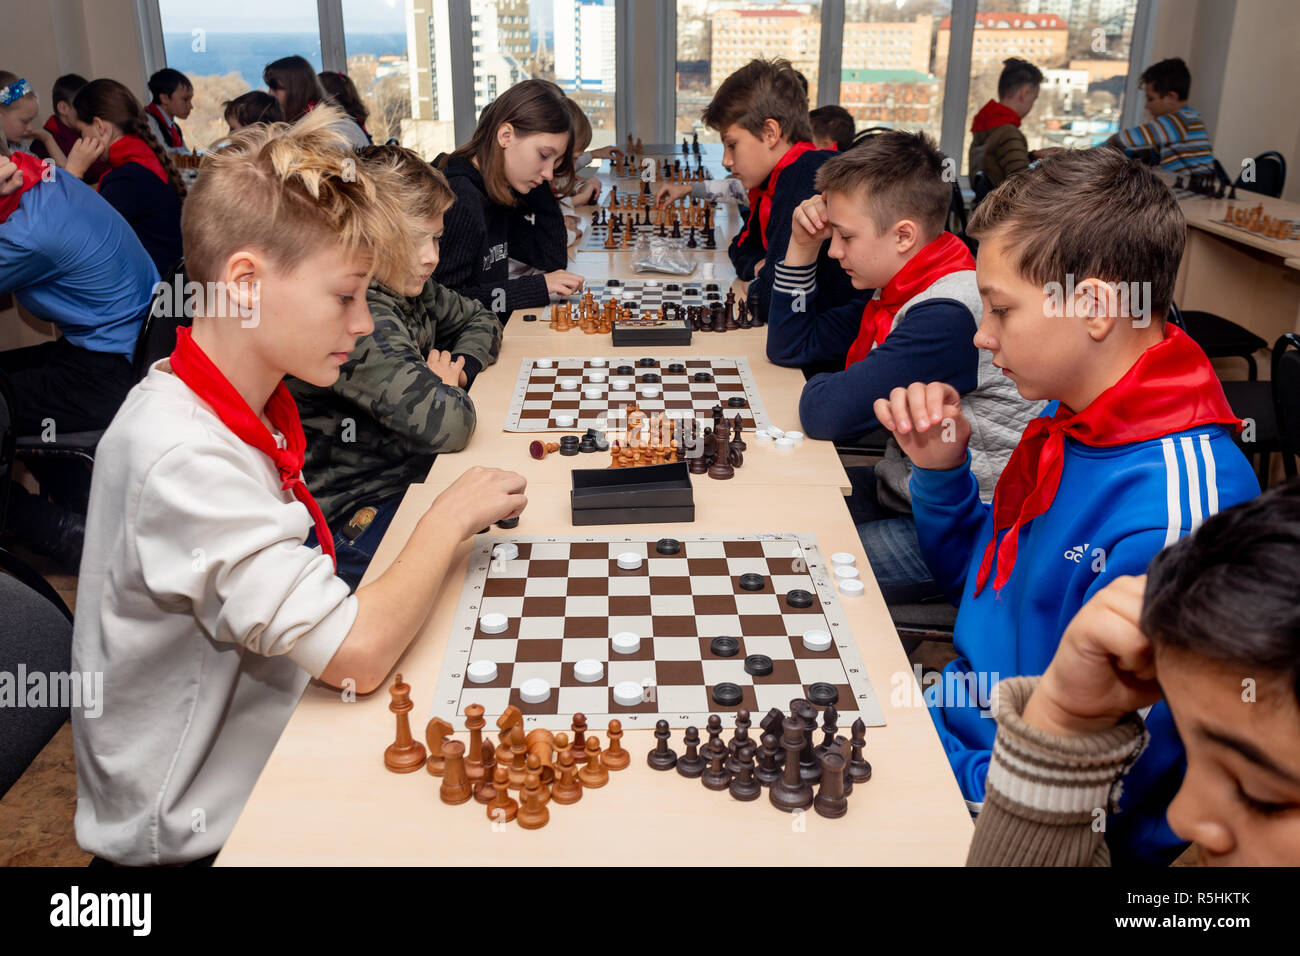 Ist Schach spielen cool oder uncool? - Lokalsport - Teckbote